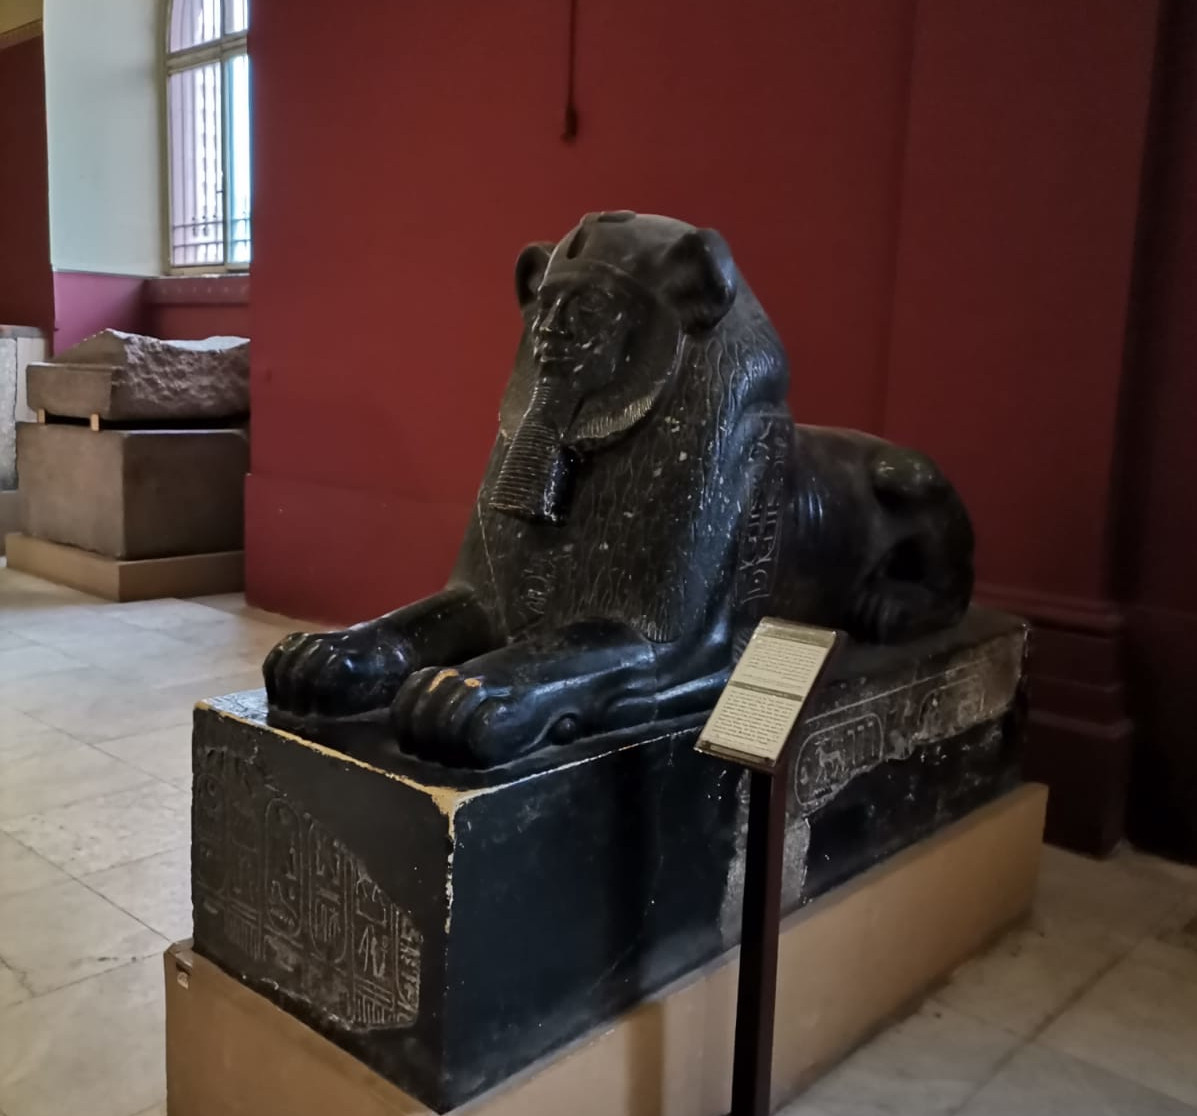  
Esfinge egipcia, museo de El Cairo